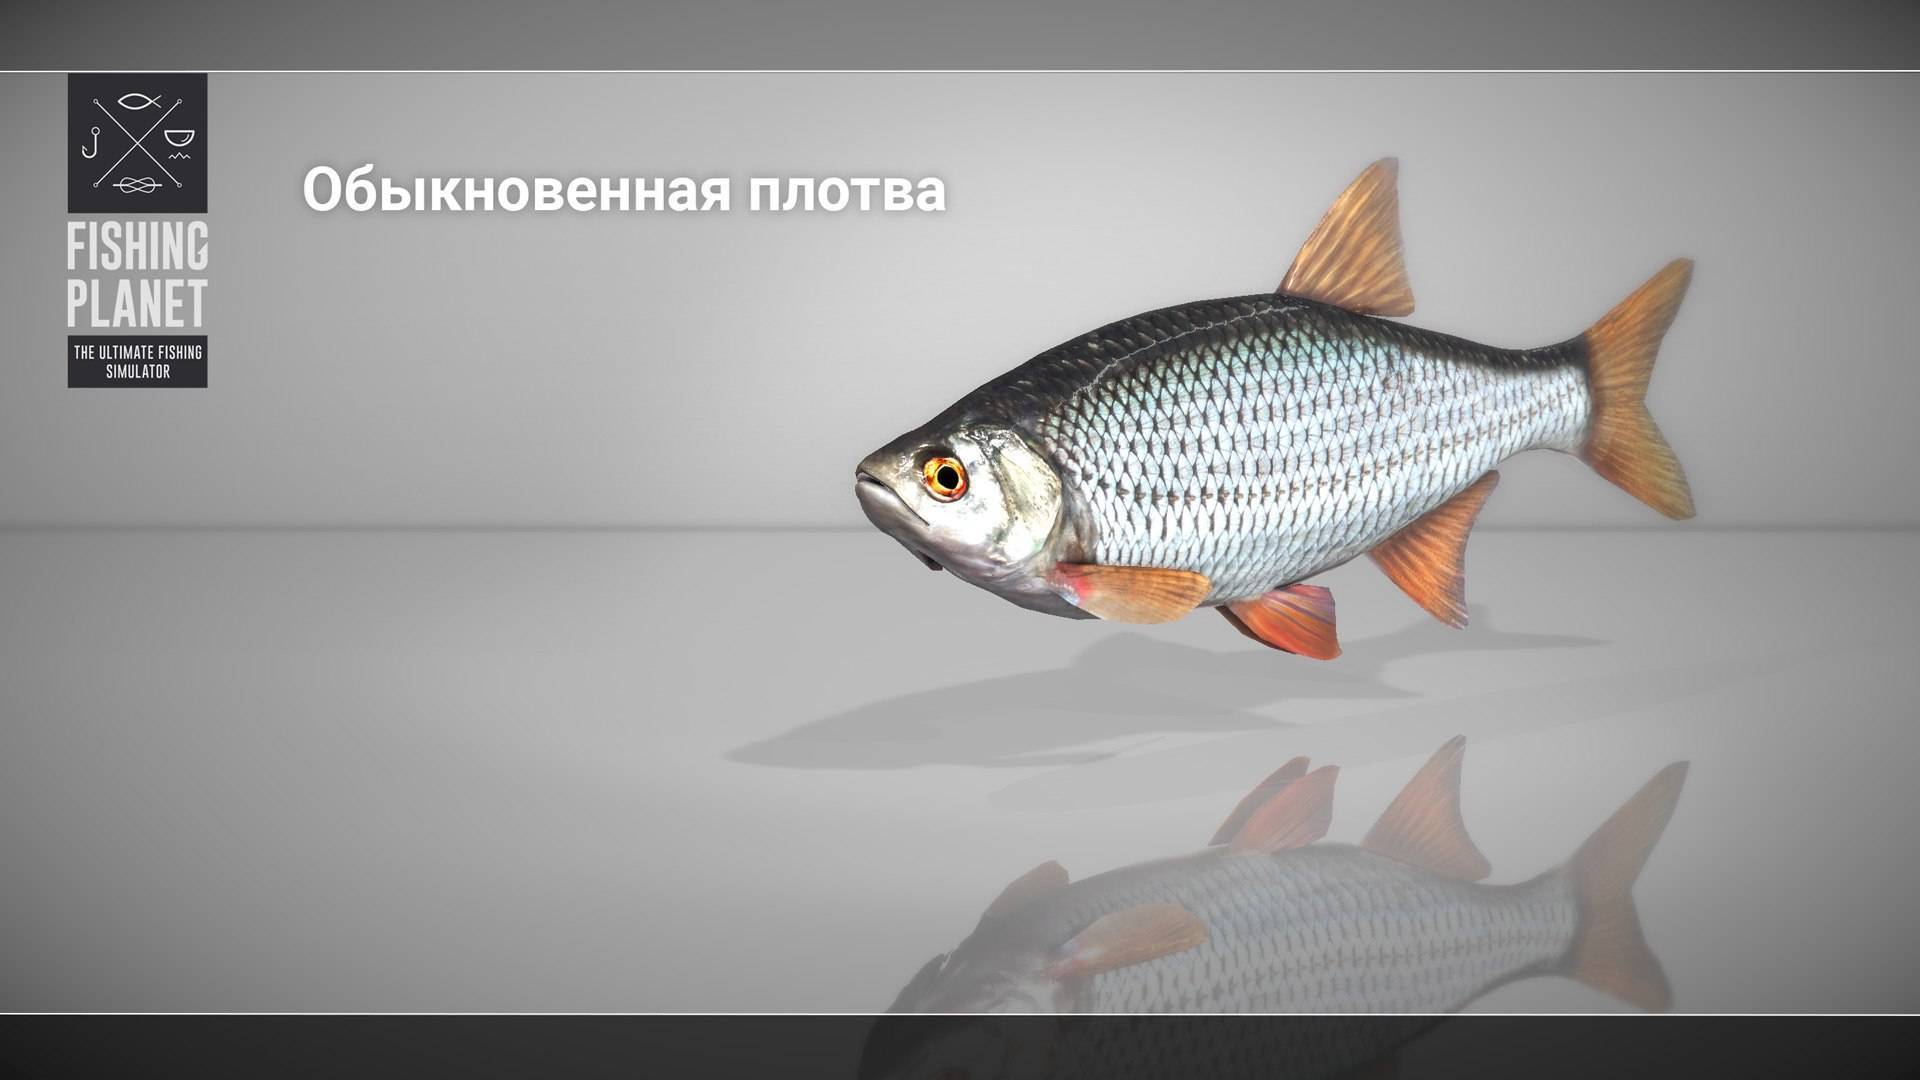 Плотва (рыба). фото и описание. видео | все о плотве